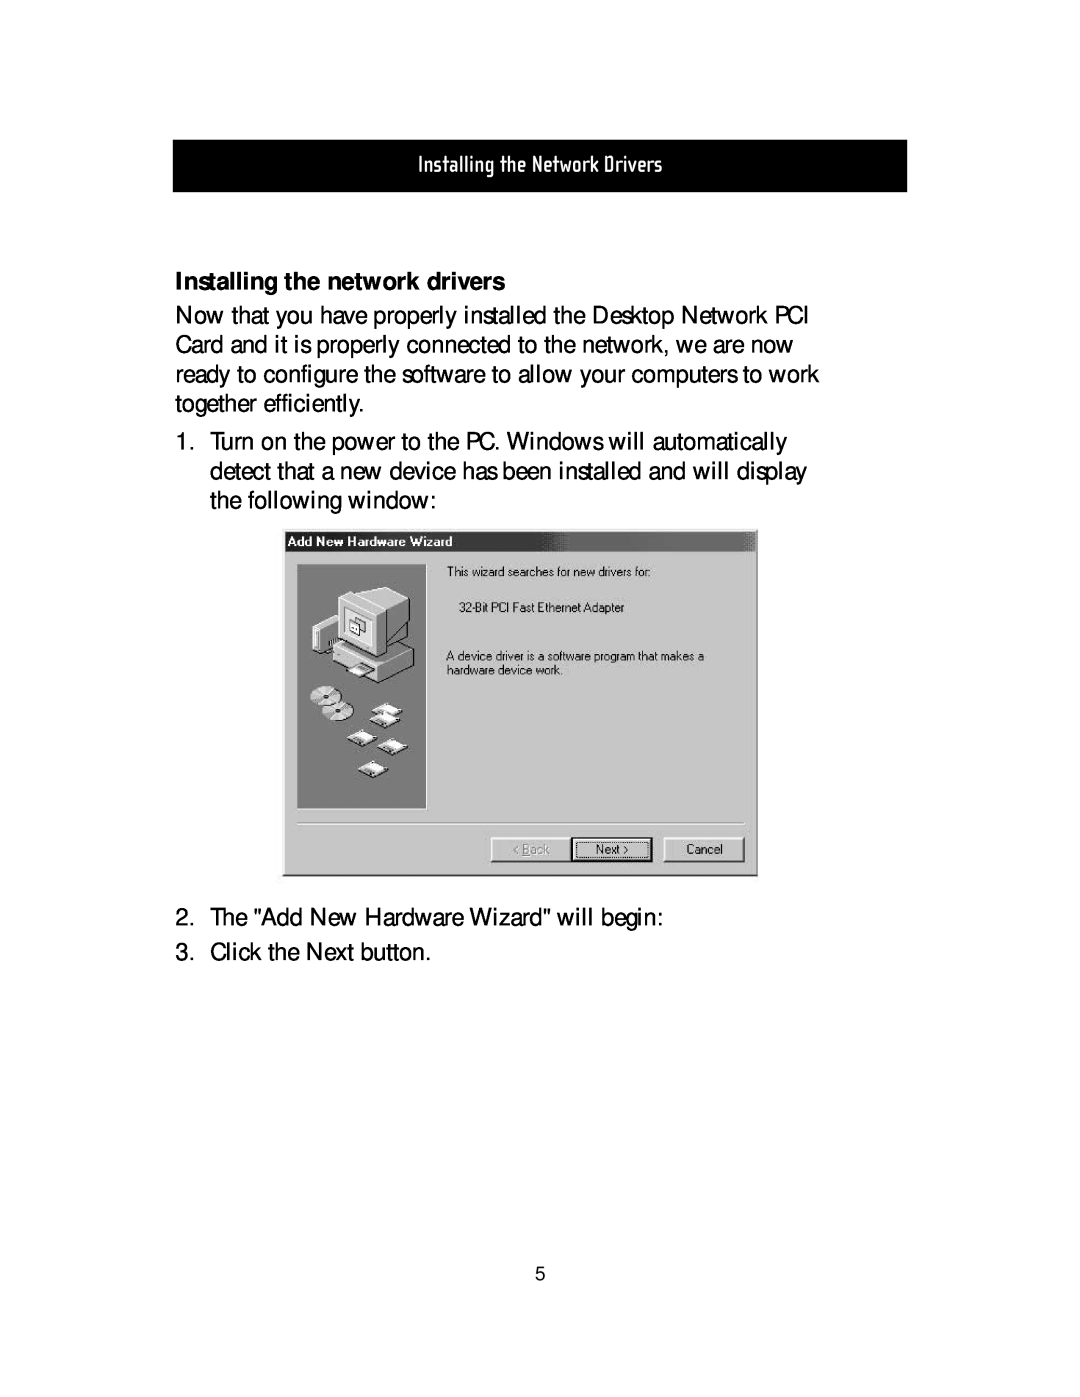 Belkin F5D5000t manual Installing the network drivers, Installing the Network Drivers 